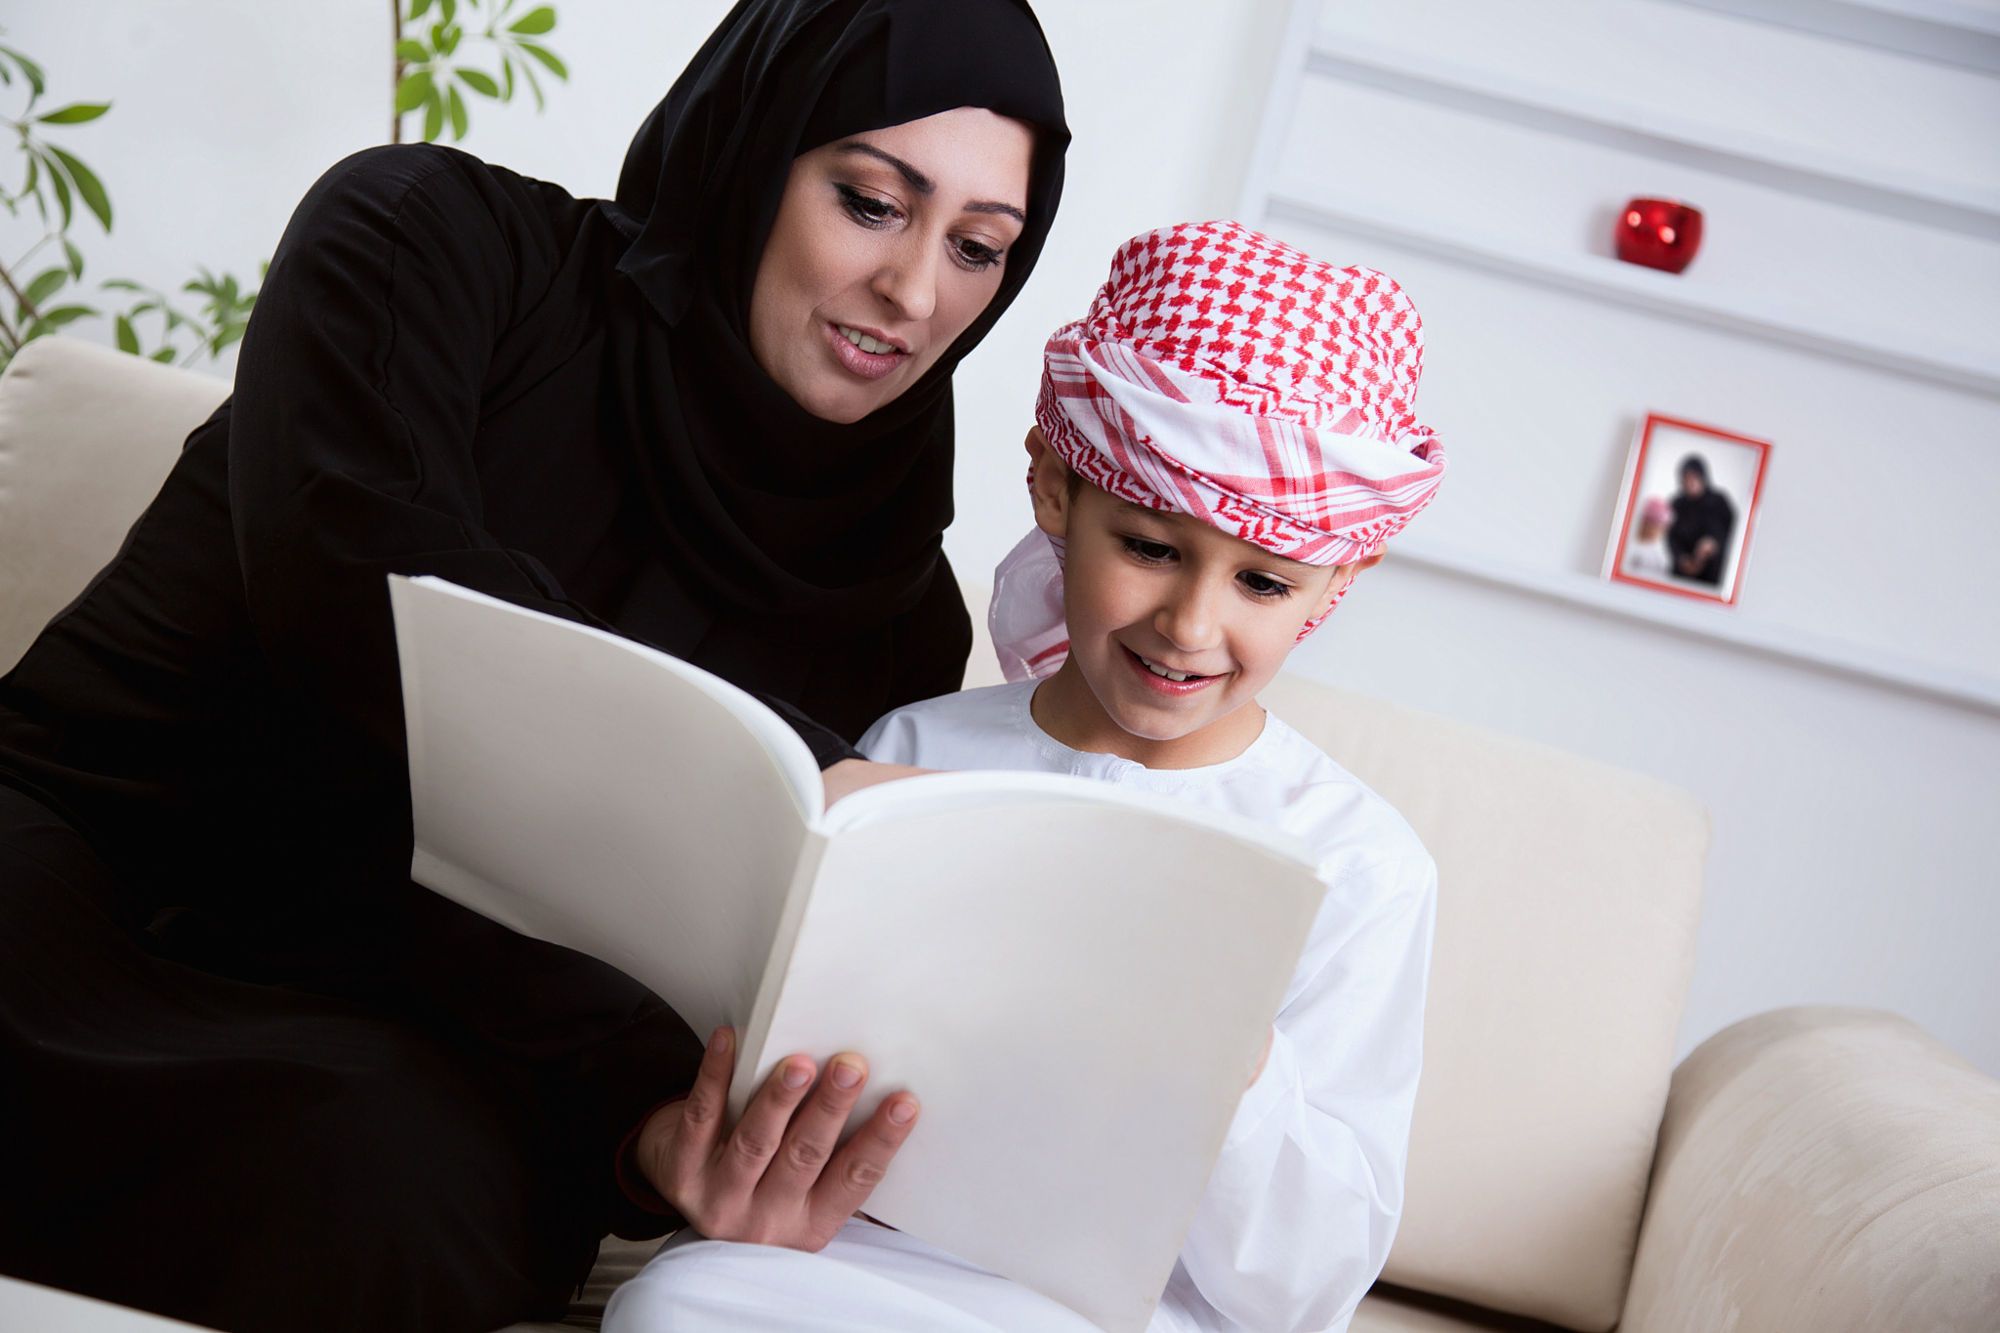  آموزش زبان عربی به کودک 